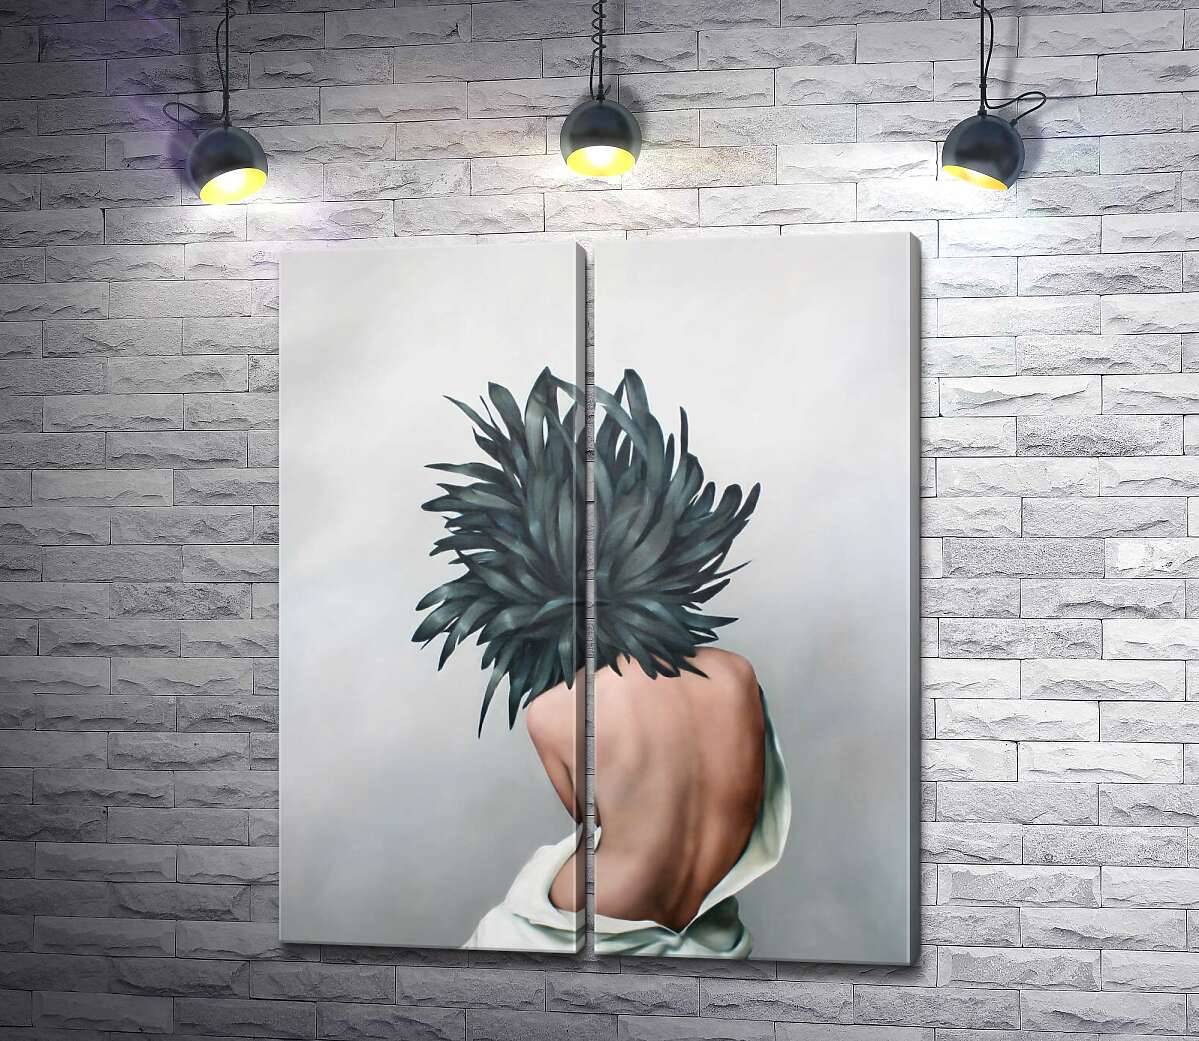 модульная картина Цветок с перьями на голове у девушки - Эми Джадд (Amy Judd)